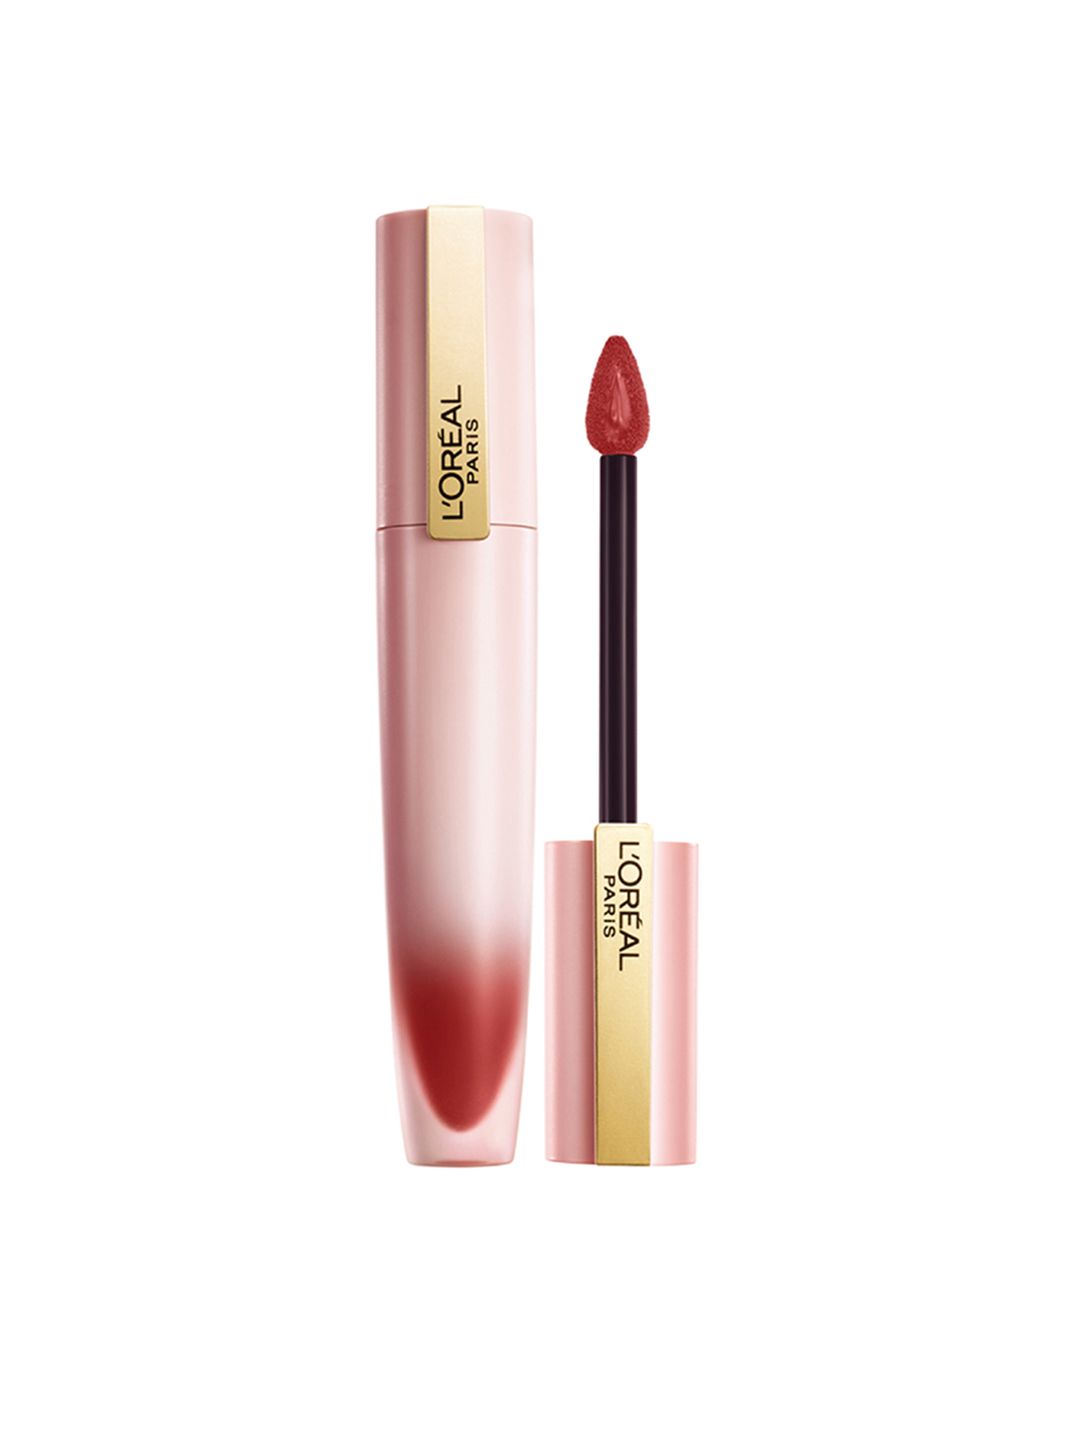 LOreal Paris Chiffon Signature Liquid Lipstick 7ml - Impassion 222 Price in India